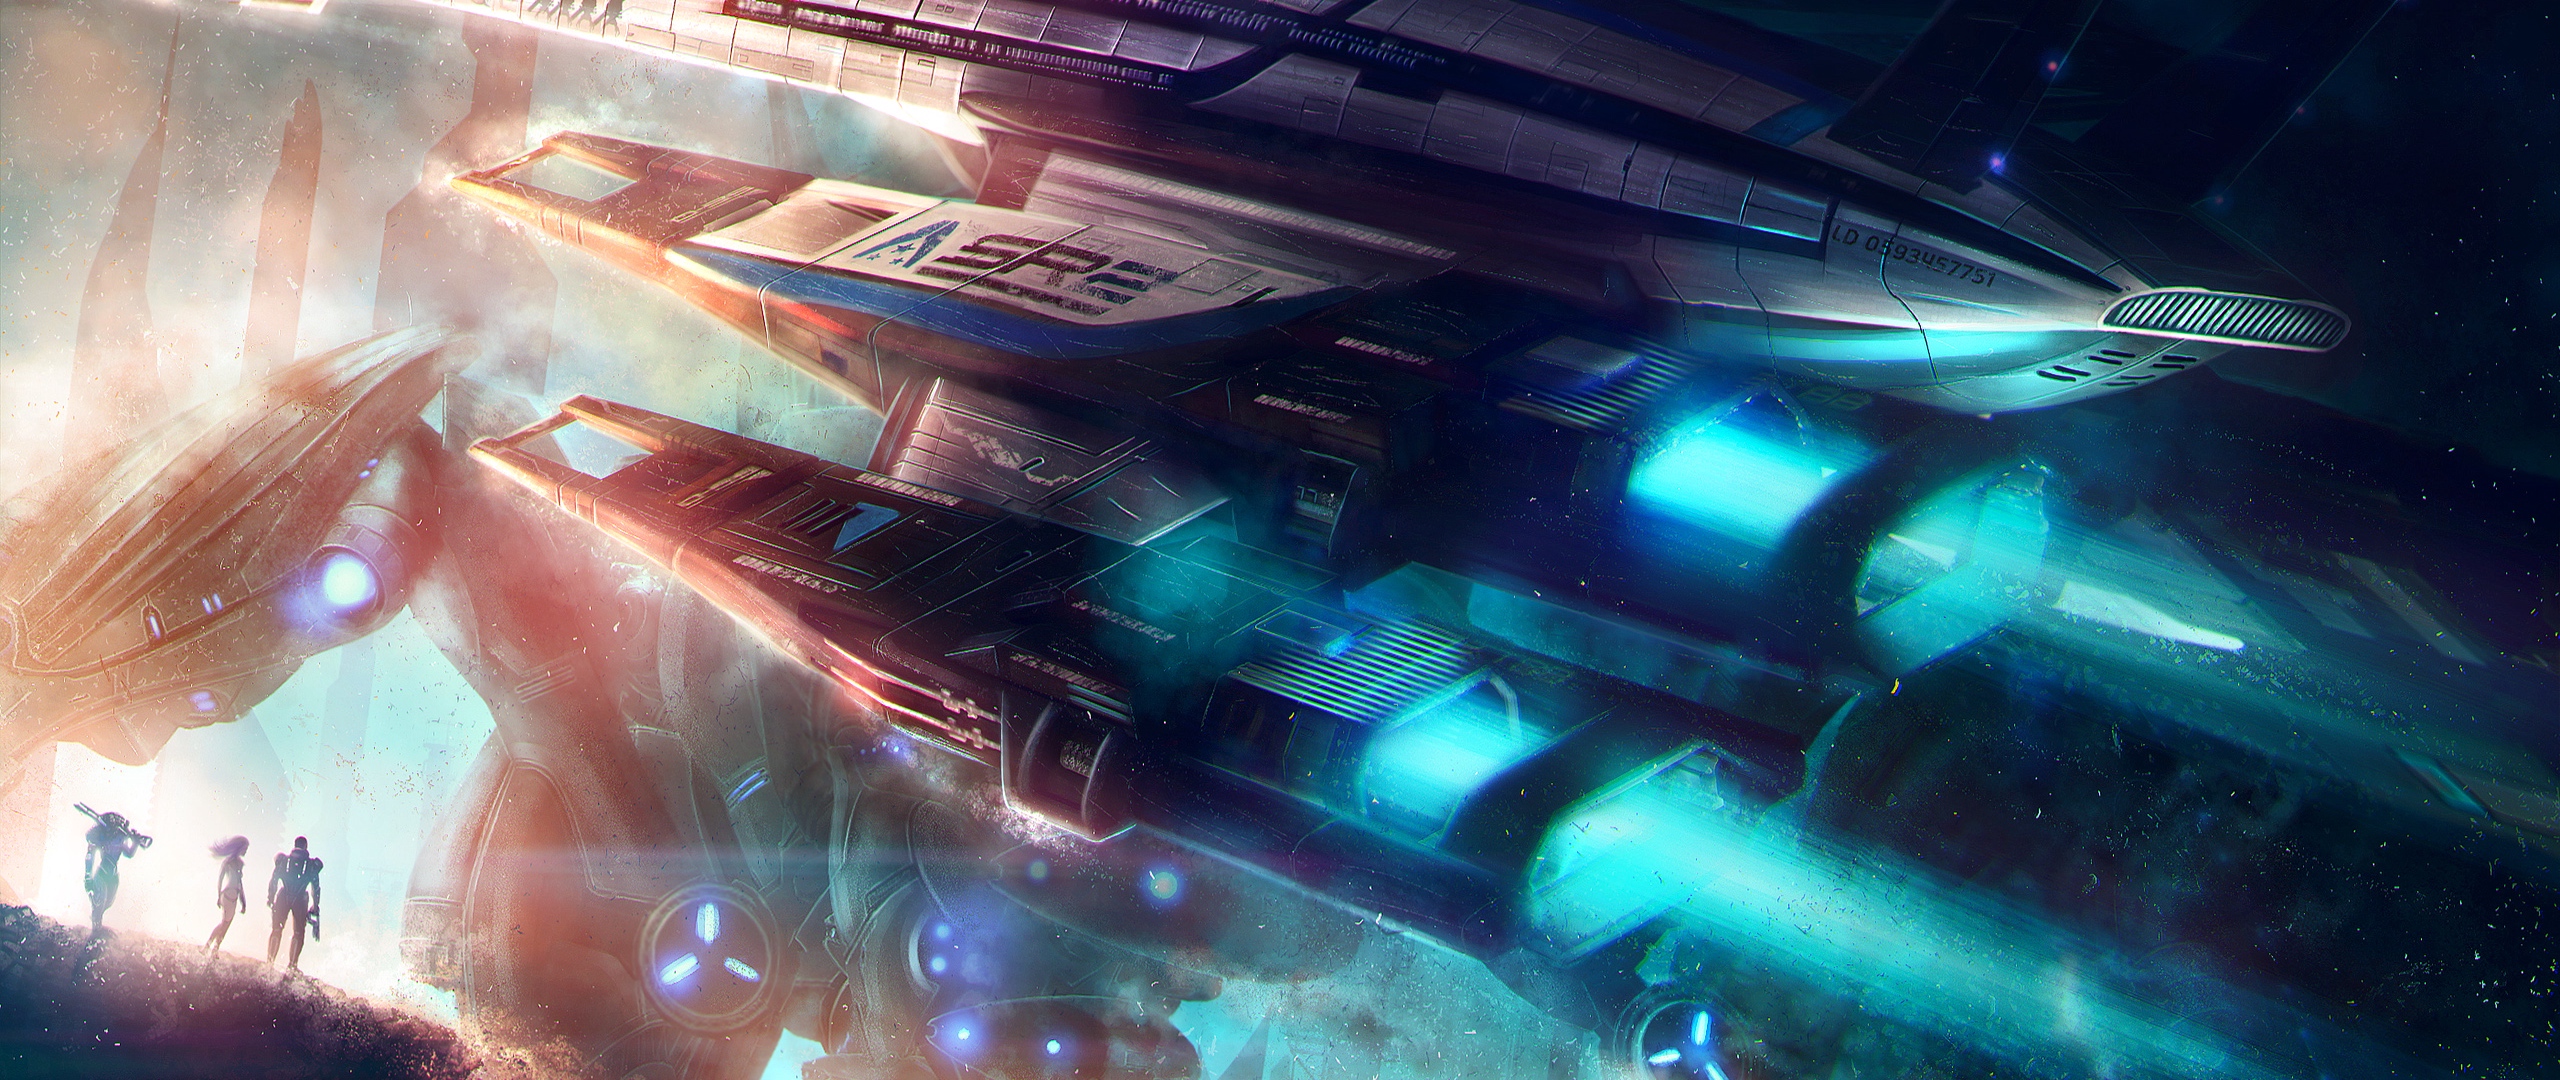 Mass Effect , HD Wallpaper & Backgrounds